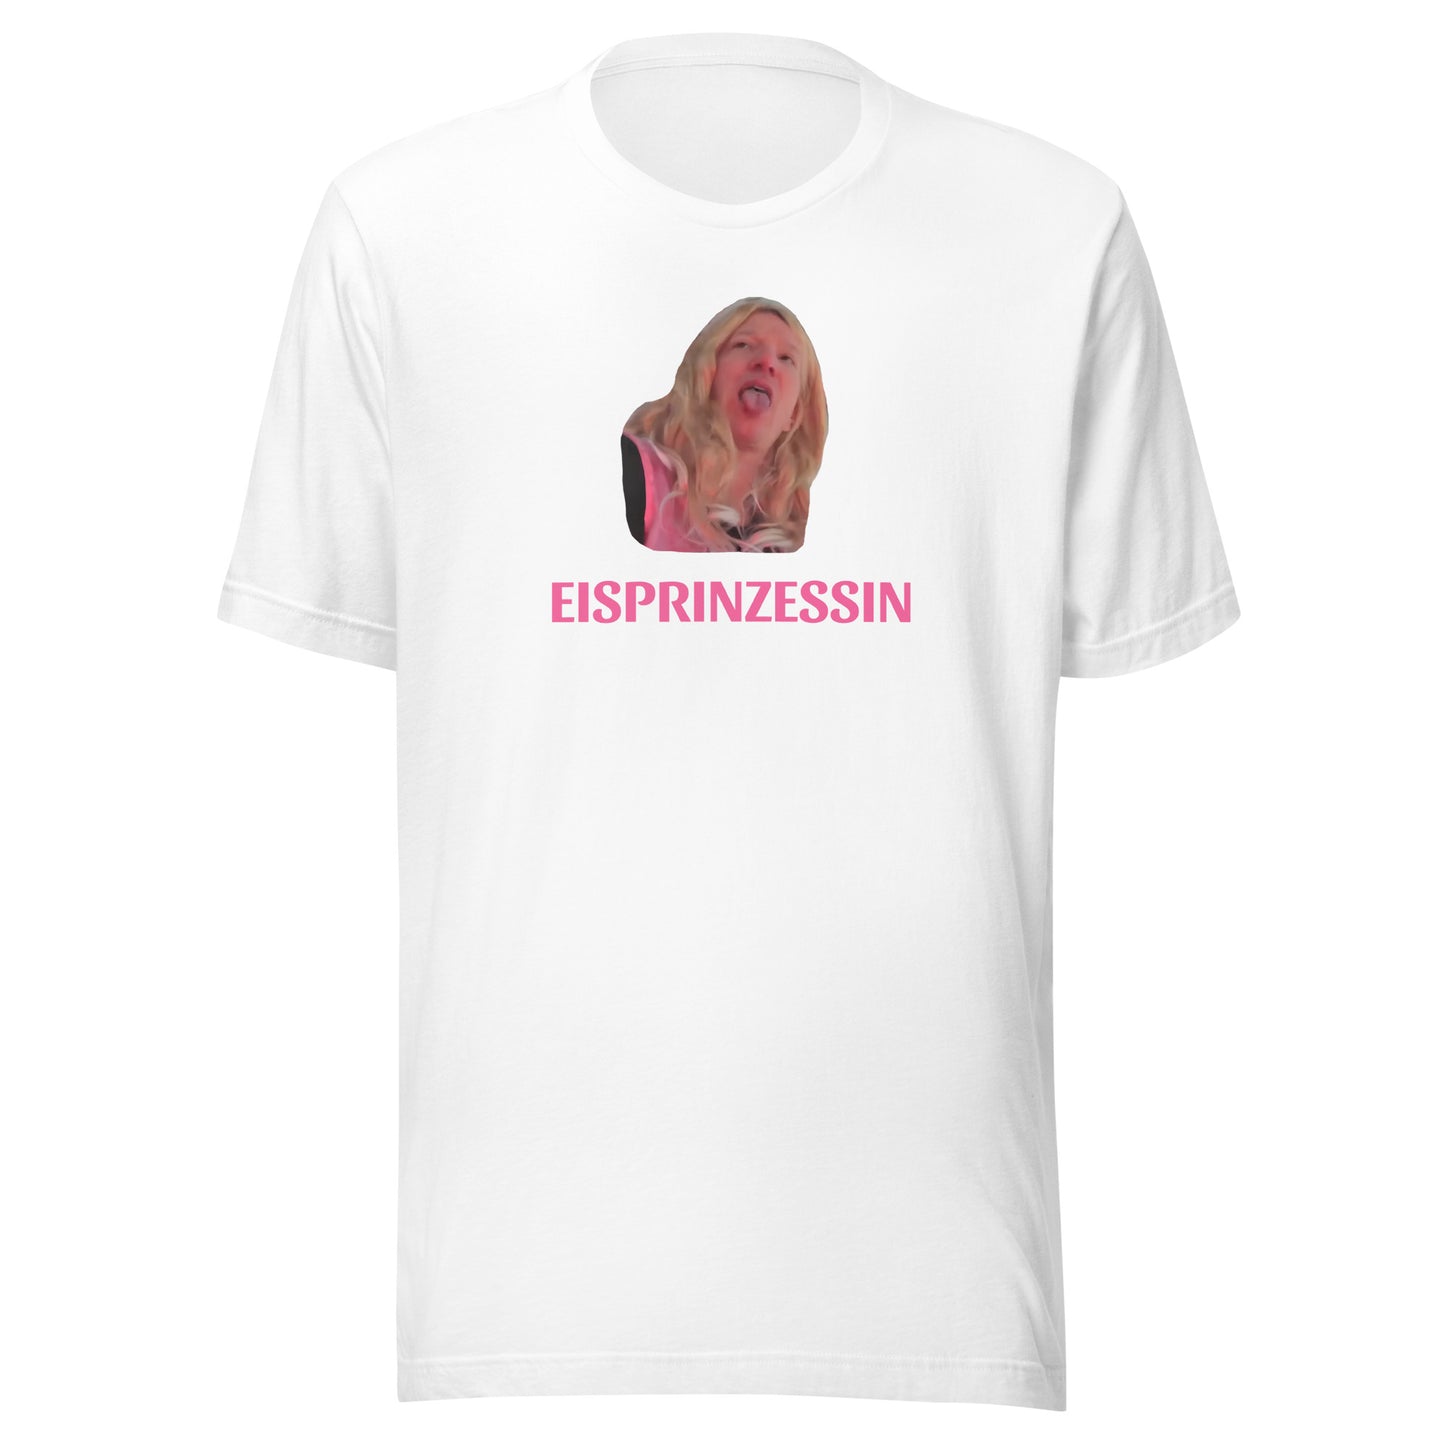 EISPRINZESSIN - T-Shirt